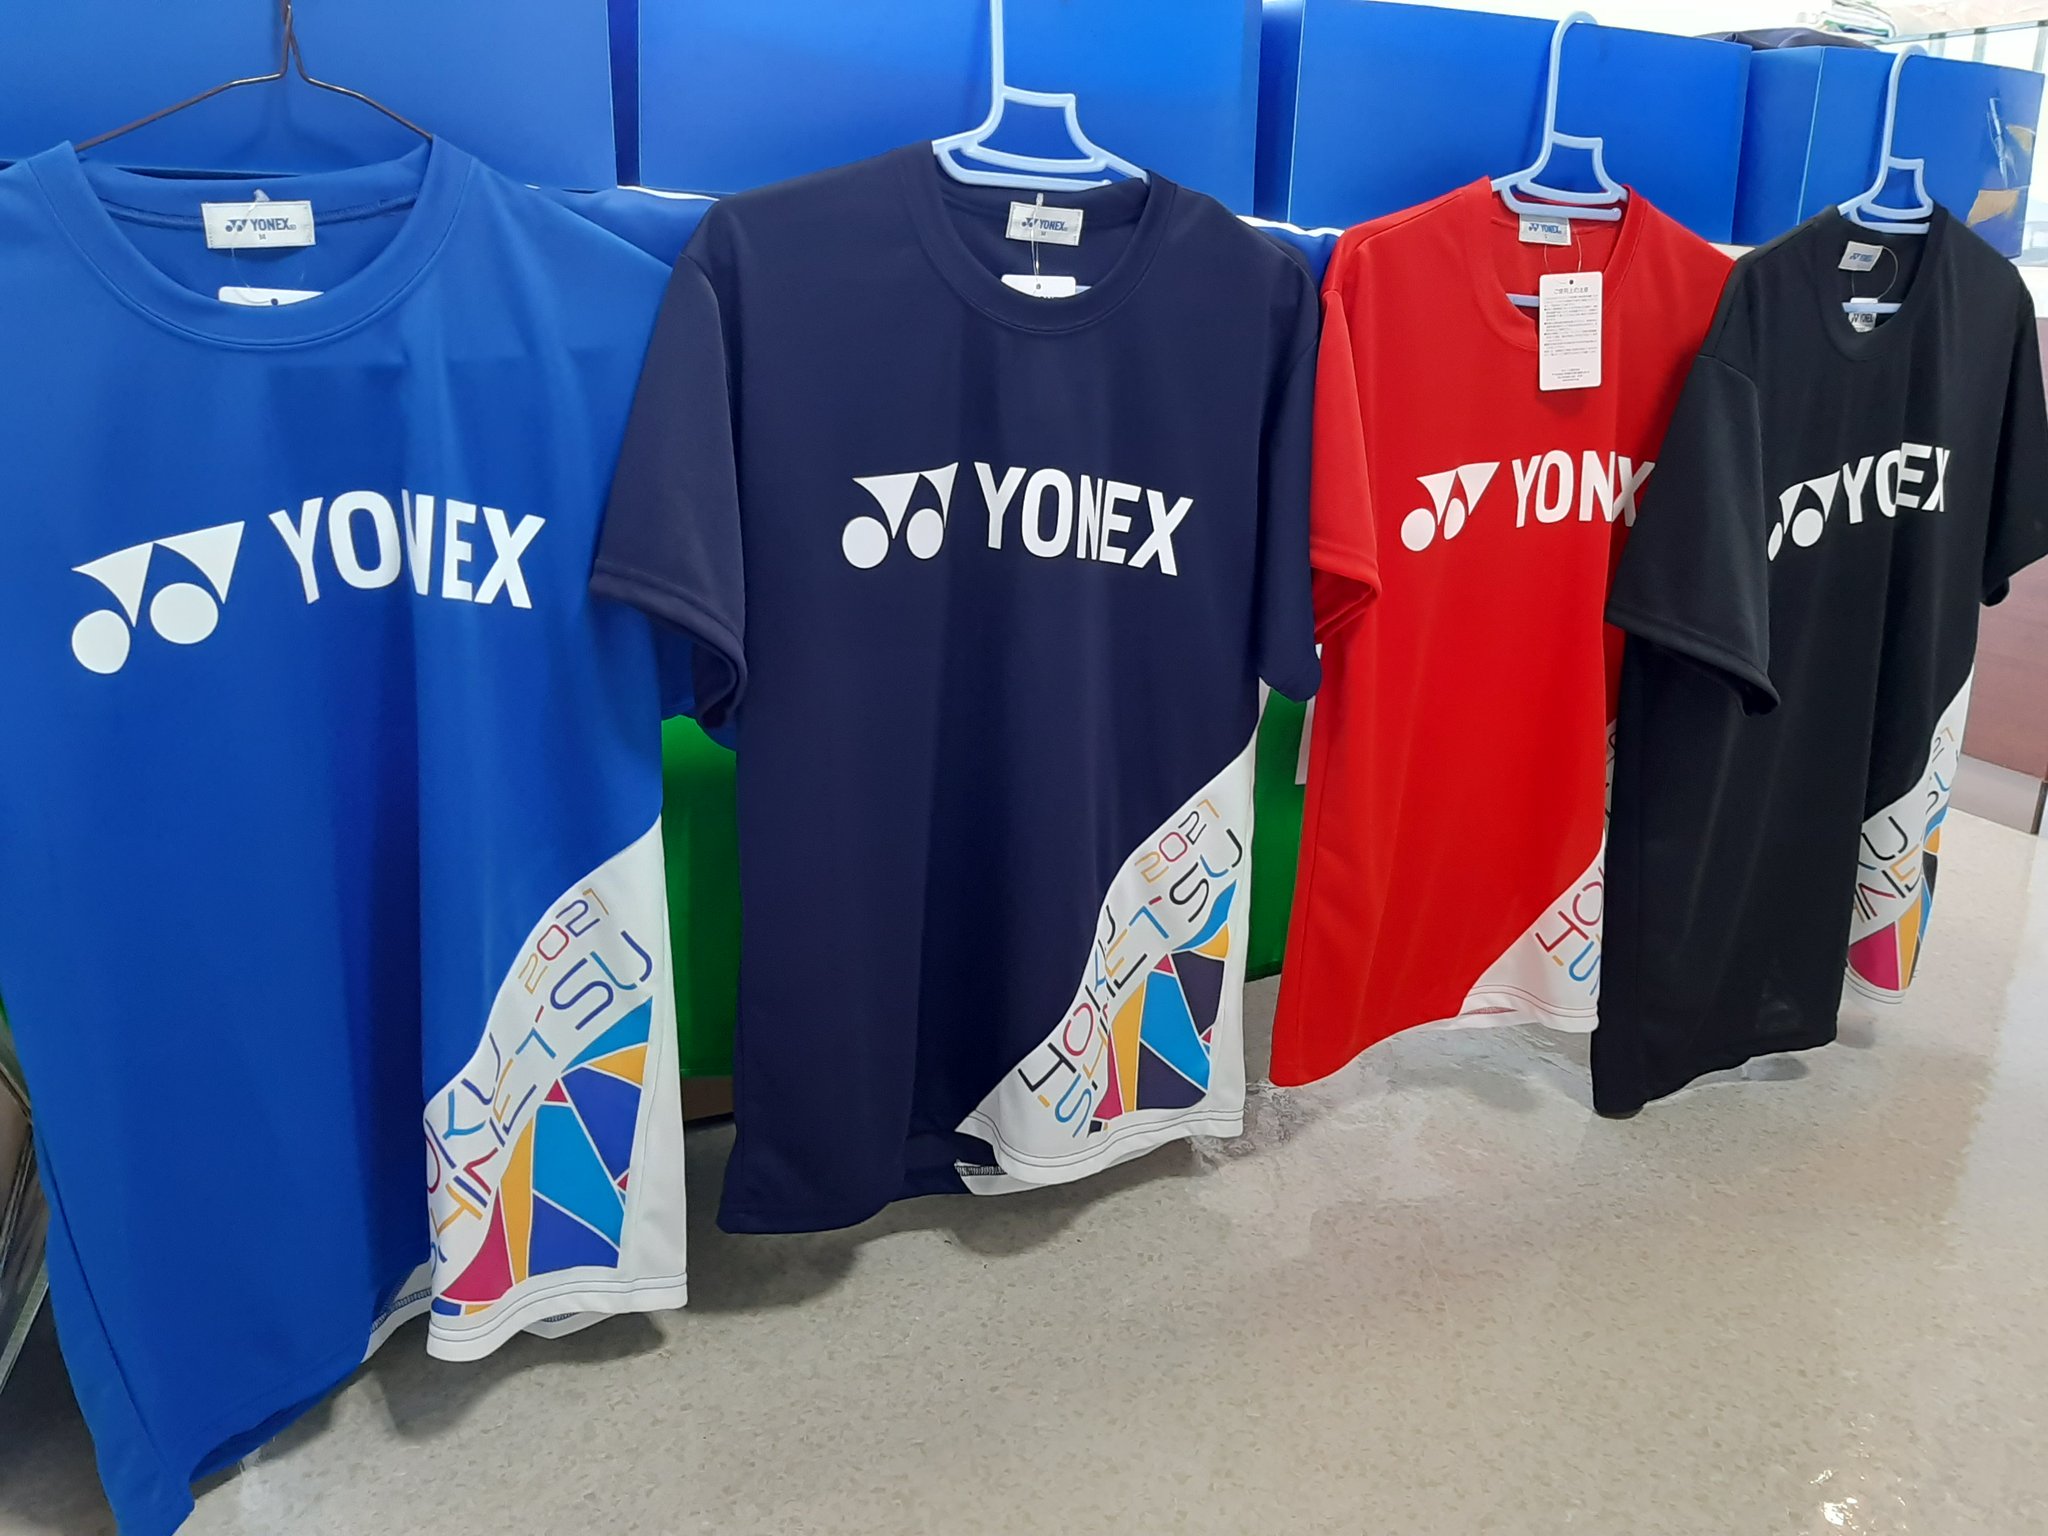 山田潤子 今日は 北信越高等学校バドミントン競技大会に来ています ヨネックスブースは北信越地区限定tシャツを中心に販売しています プリントがすごくかわいいです 明日まで 販売しています 選手の皆頑張れー ヨネックス Yonex 北信越